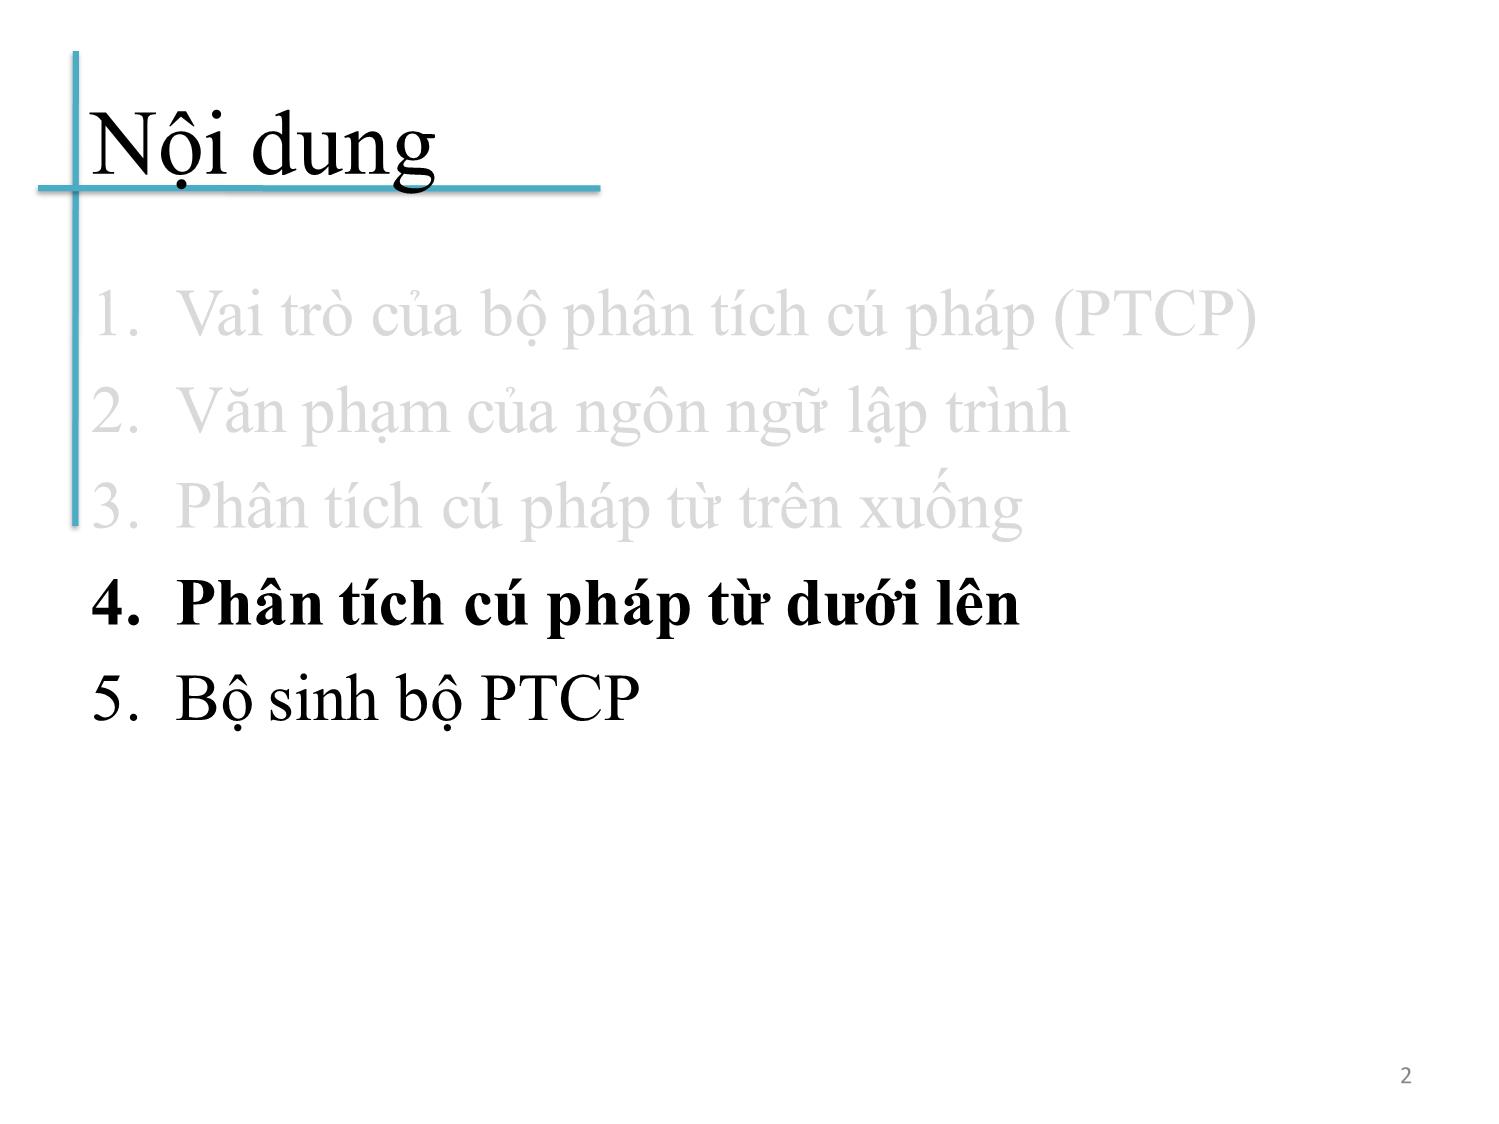 Bài giảng Chương trình dịch - Bài 4: Phân tích cú pháp từ dưới lên - Hoàng Anh Việt trang 2